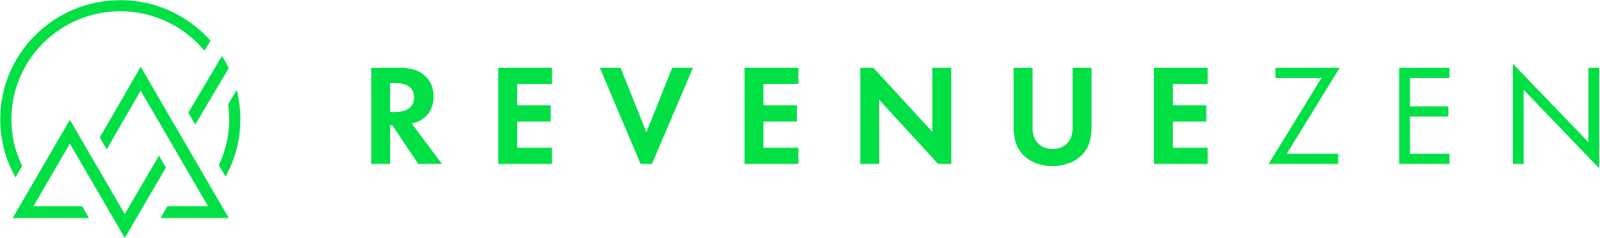 RevenueZen’s logo